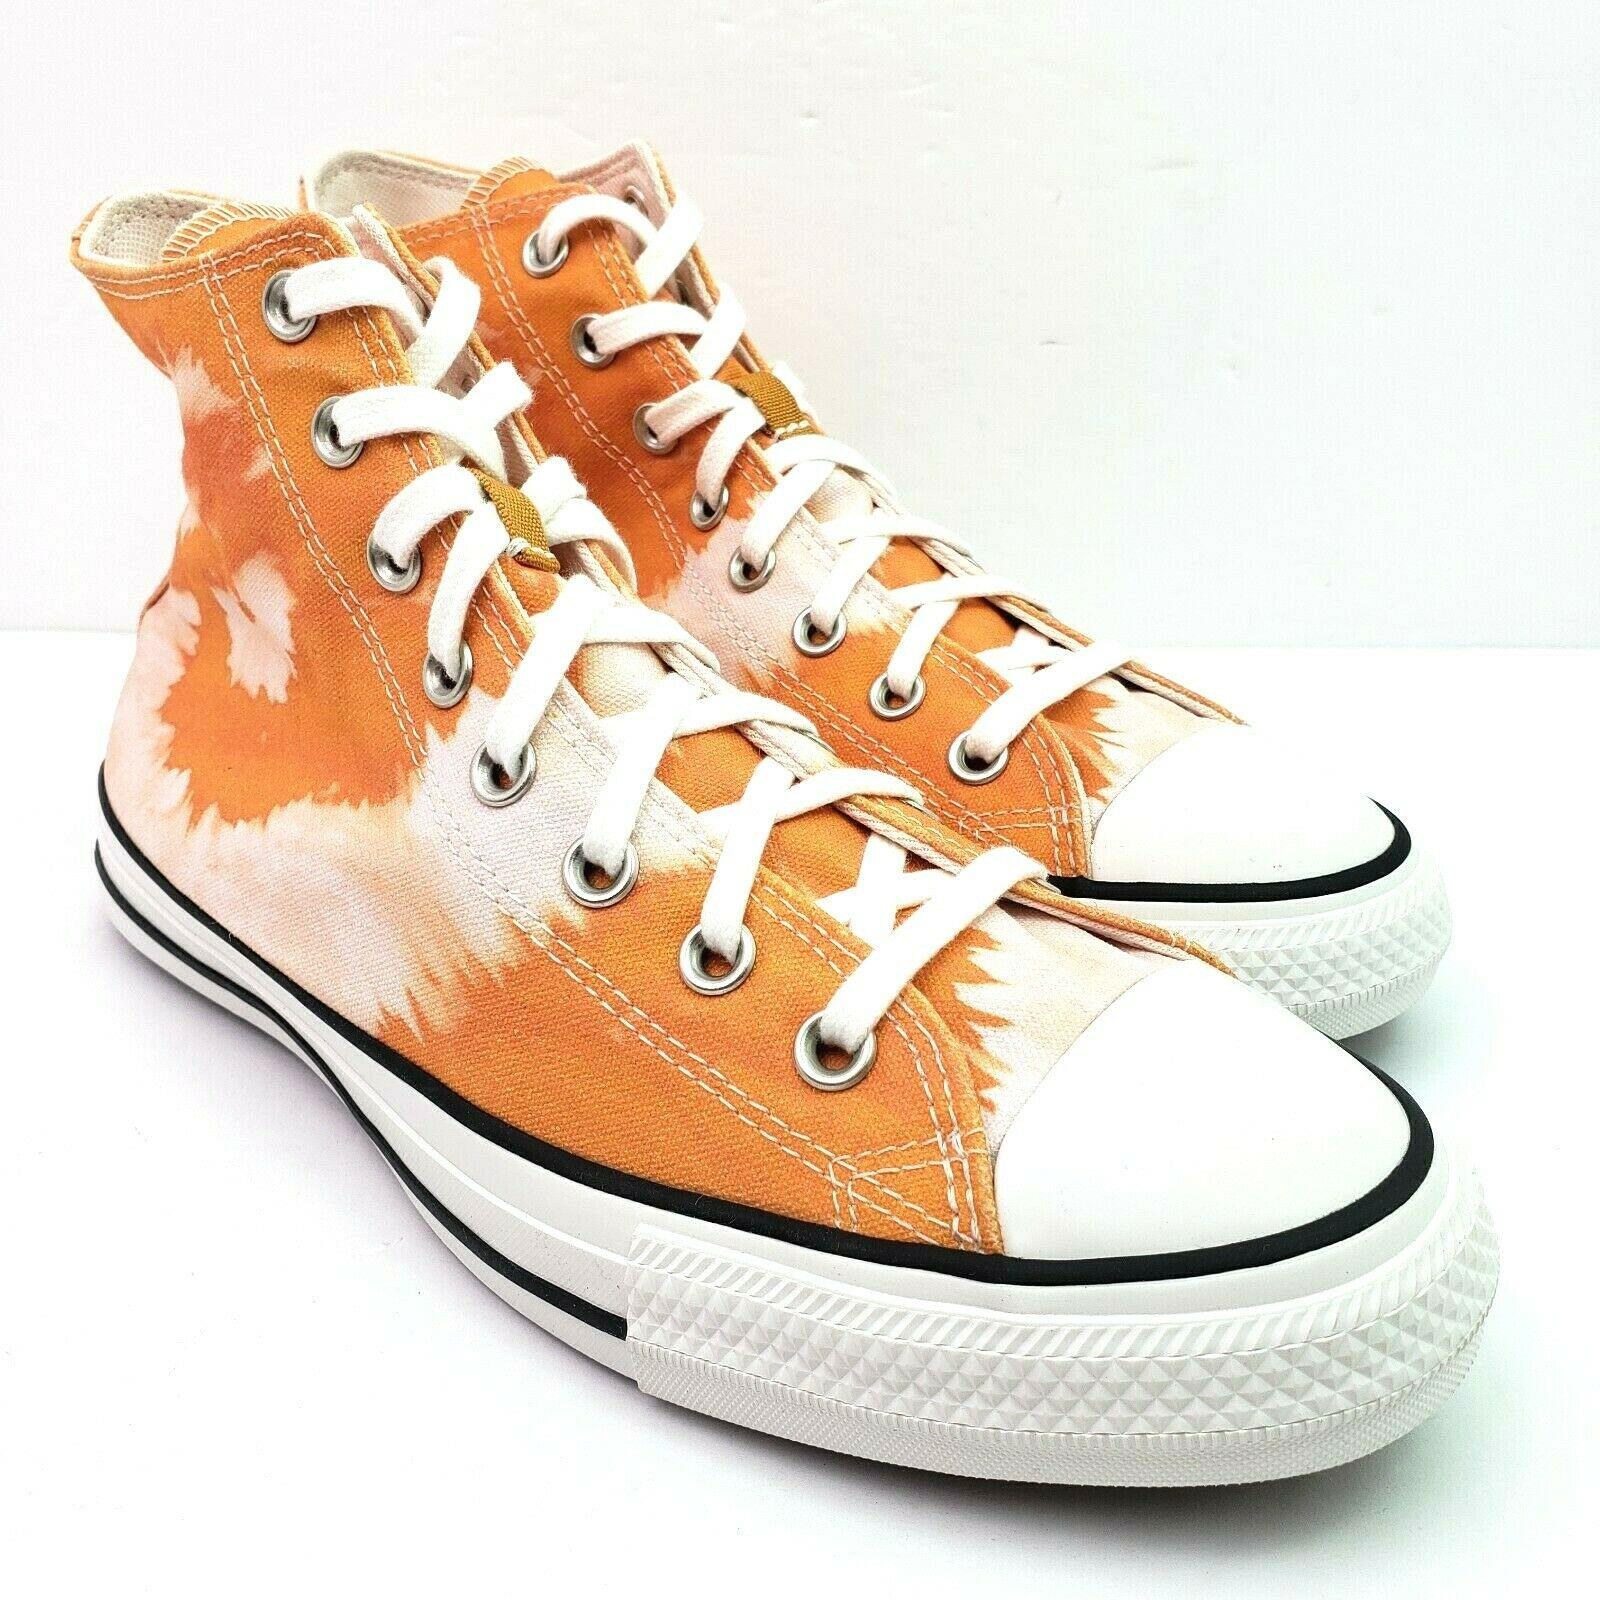 Converse Ctas Hi Summer Wave Mens Sz 9 Wms Sz 11 Amber Ochre White Sneaker Shoe